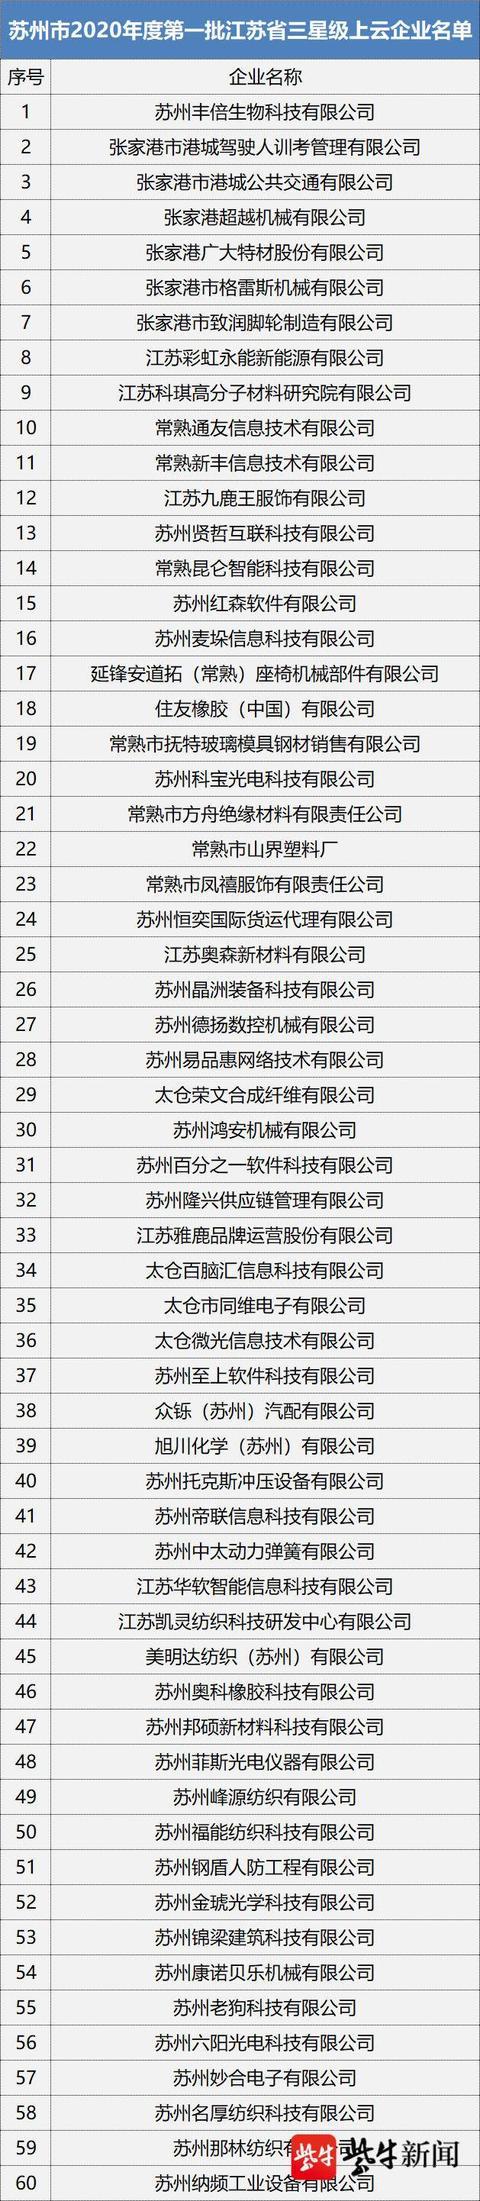 苏州市2020年度首批省三星级上云企业名单公示